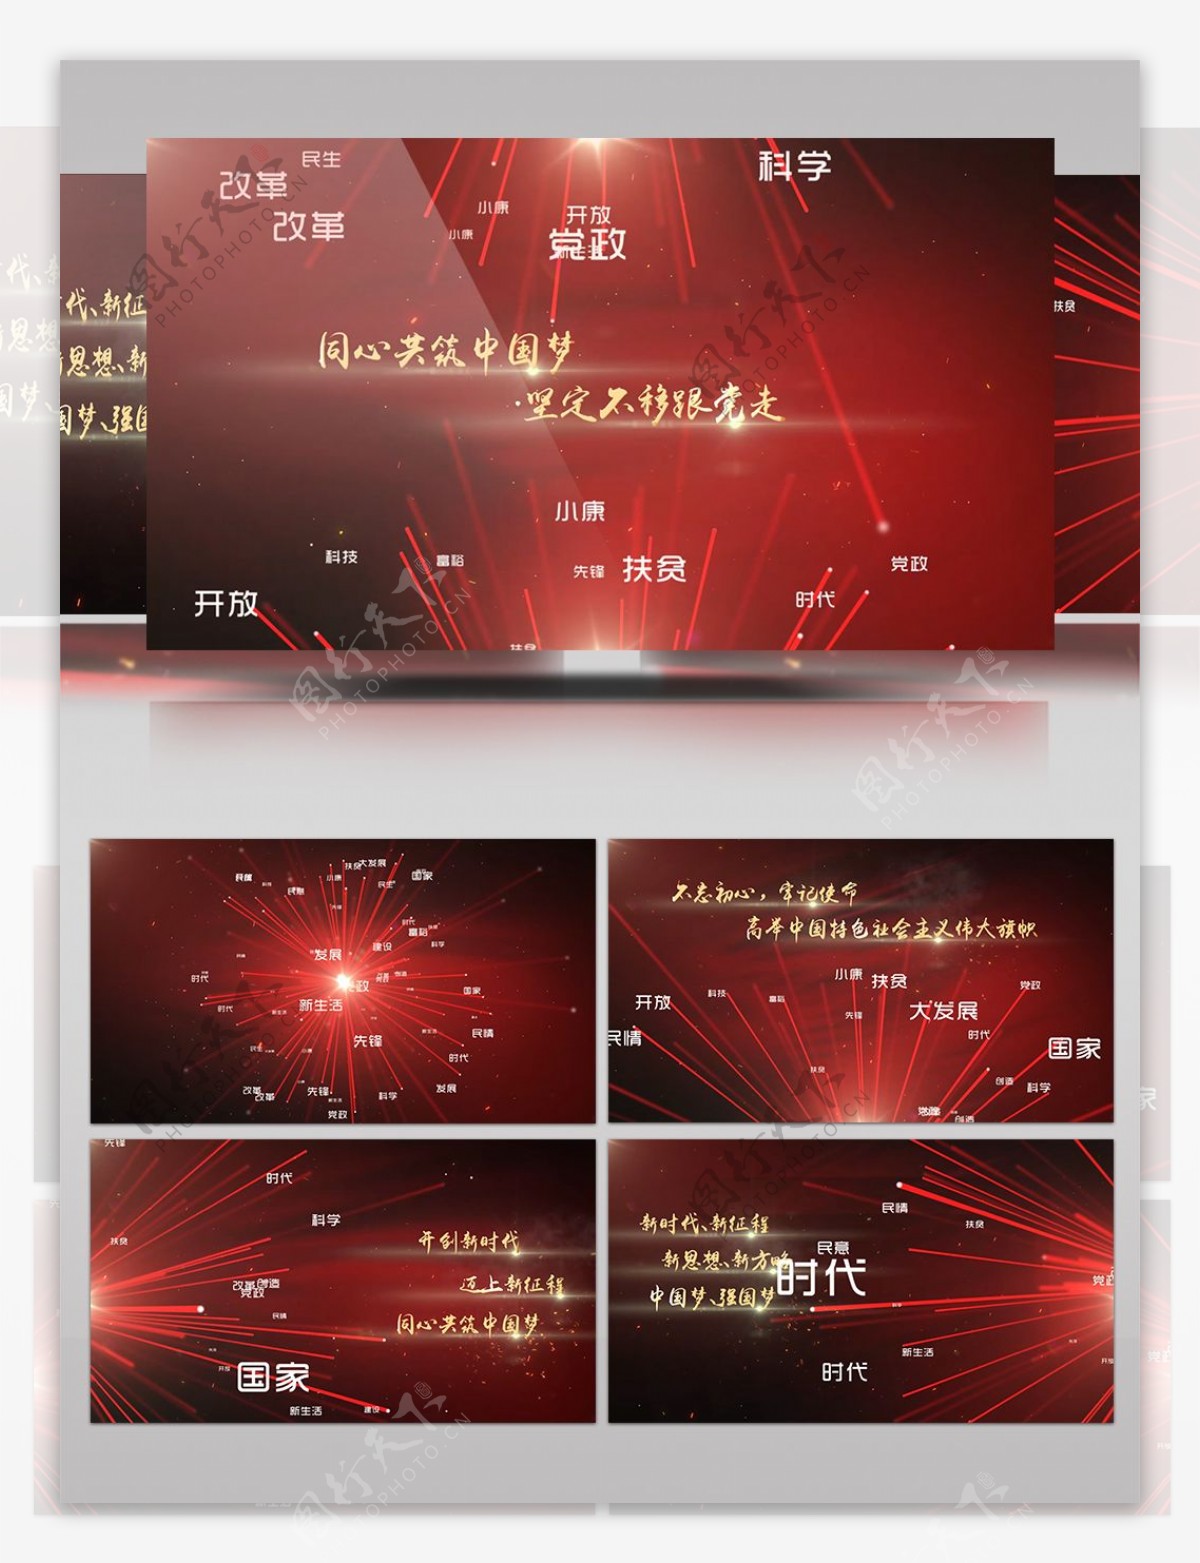 红色党政风共创伟大中国梦AE模板